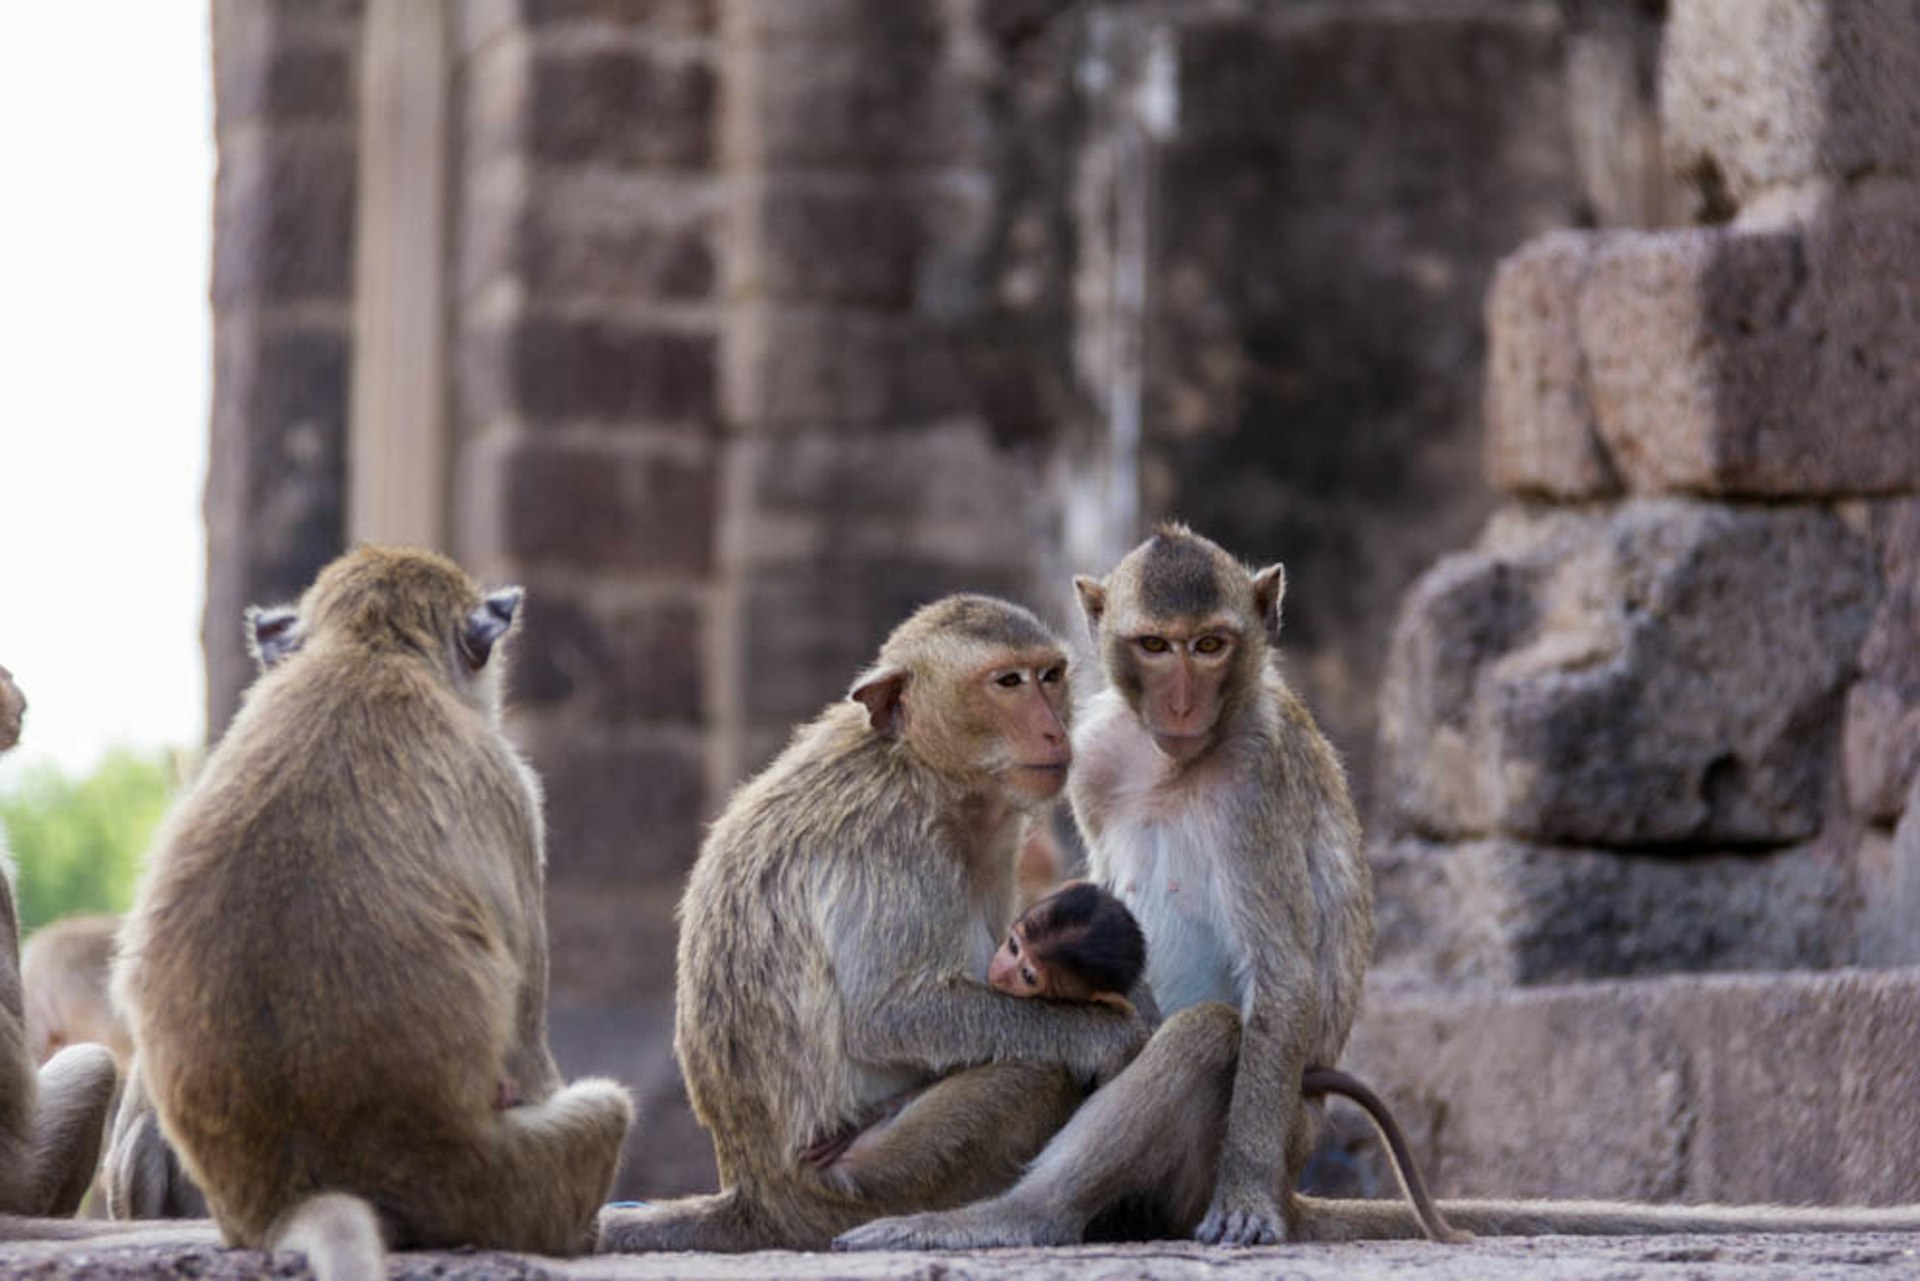 Monkeys at Prang Sam Yot Khmer ruin, Lopburi, Thailand © Tim Bewer / Lonely Planet